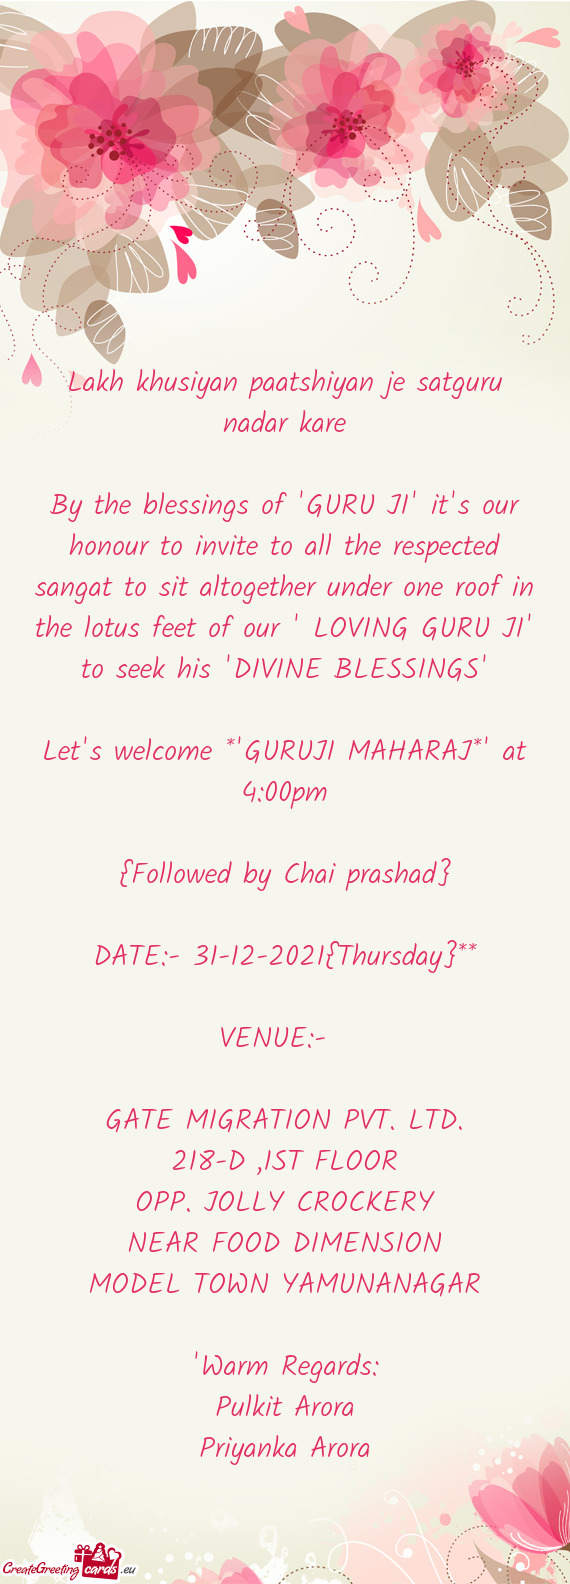 R under one roof in the lotus feet of our " LOVING GURU JI" to seek his "DIVINE BLESSINGS"